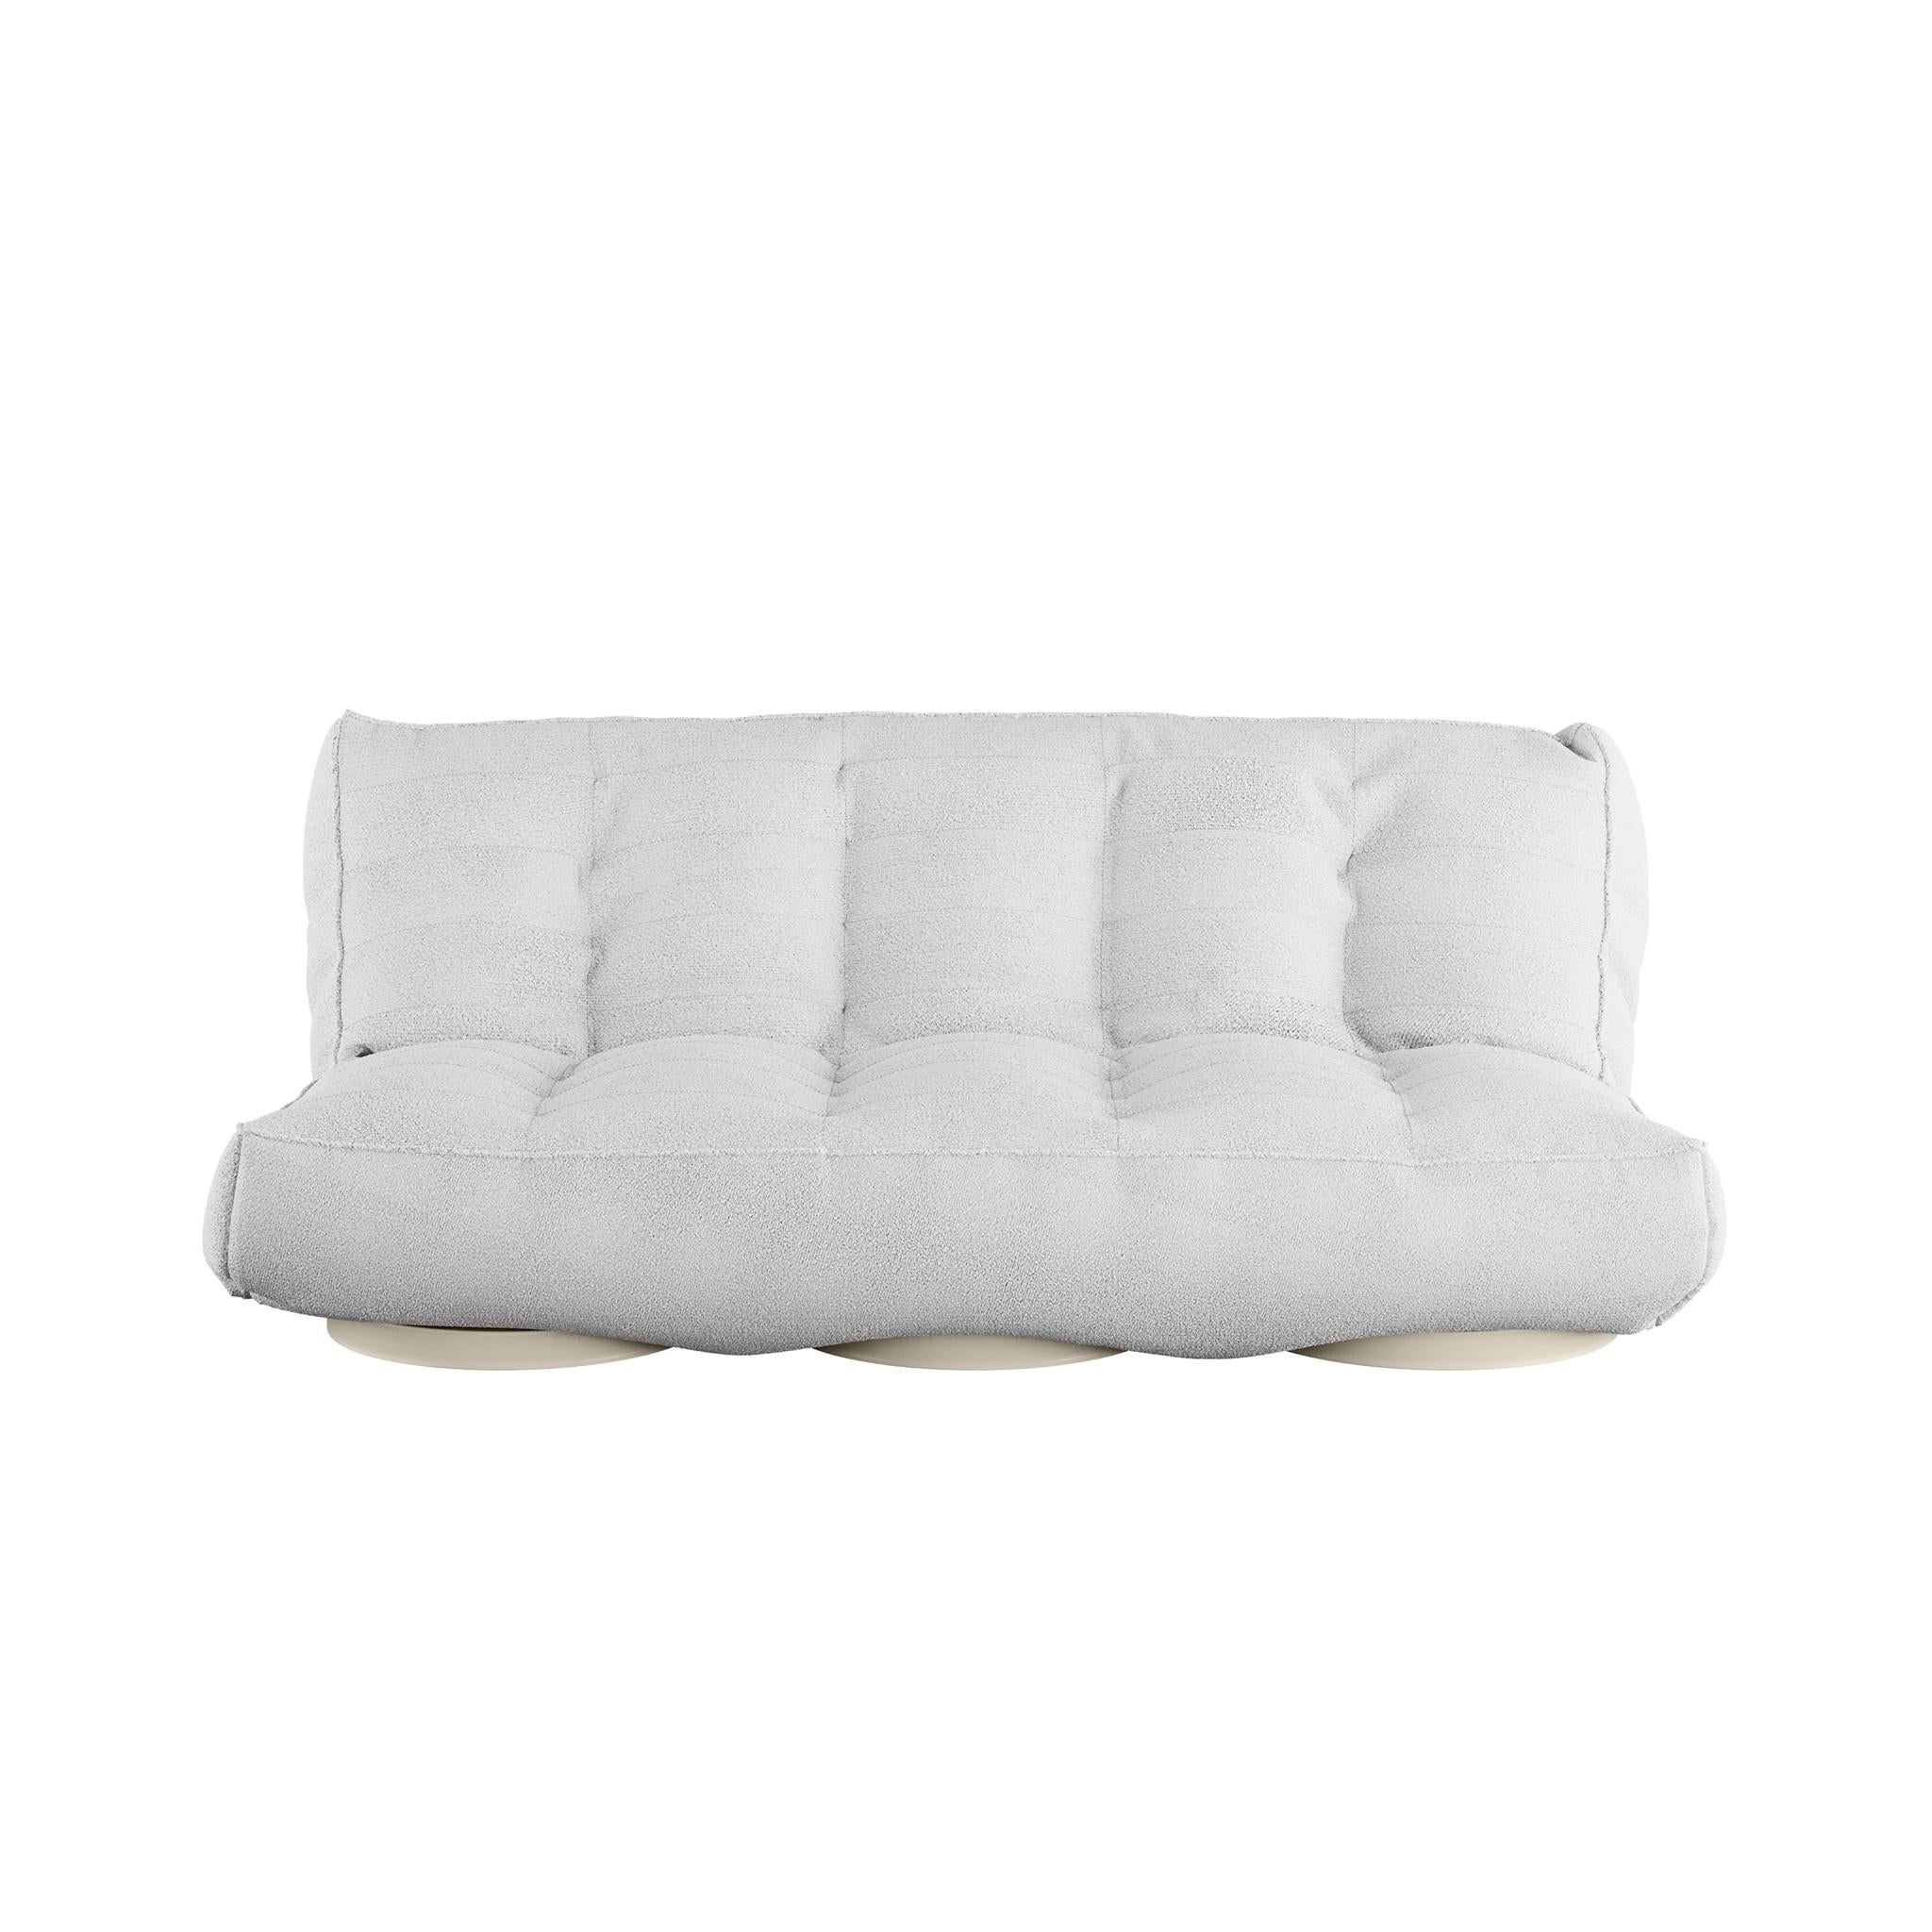 Foil Daybed est un lit de jour de luxe. Vous êtes à la recherche d'un canapé moderne dont le design ne se démodera pas avec le temps ? Vous l'avez trouvé. La structure ergonomique et les détails délicats de Foil le rendent confortable, luxueux et